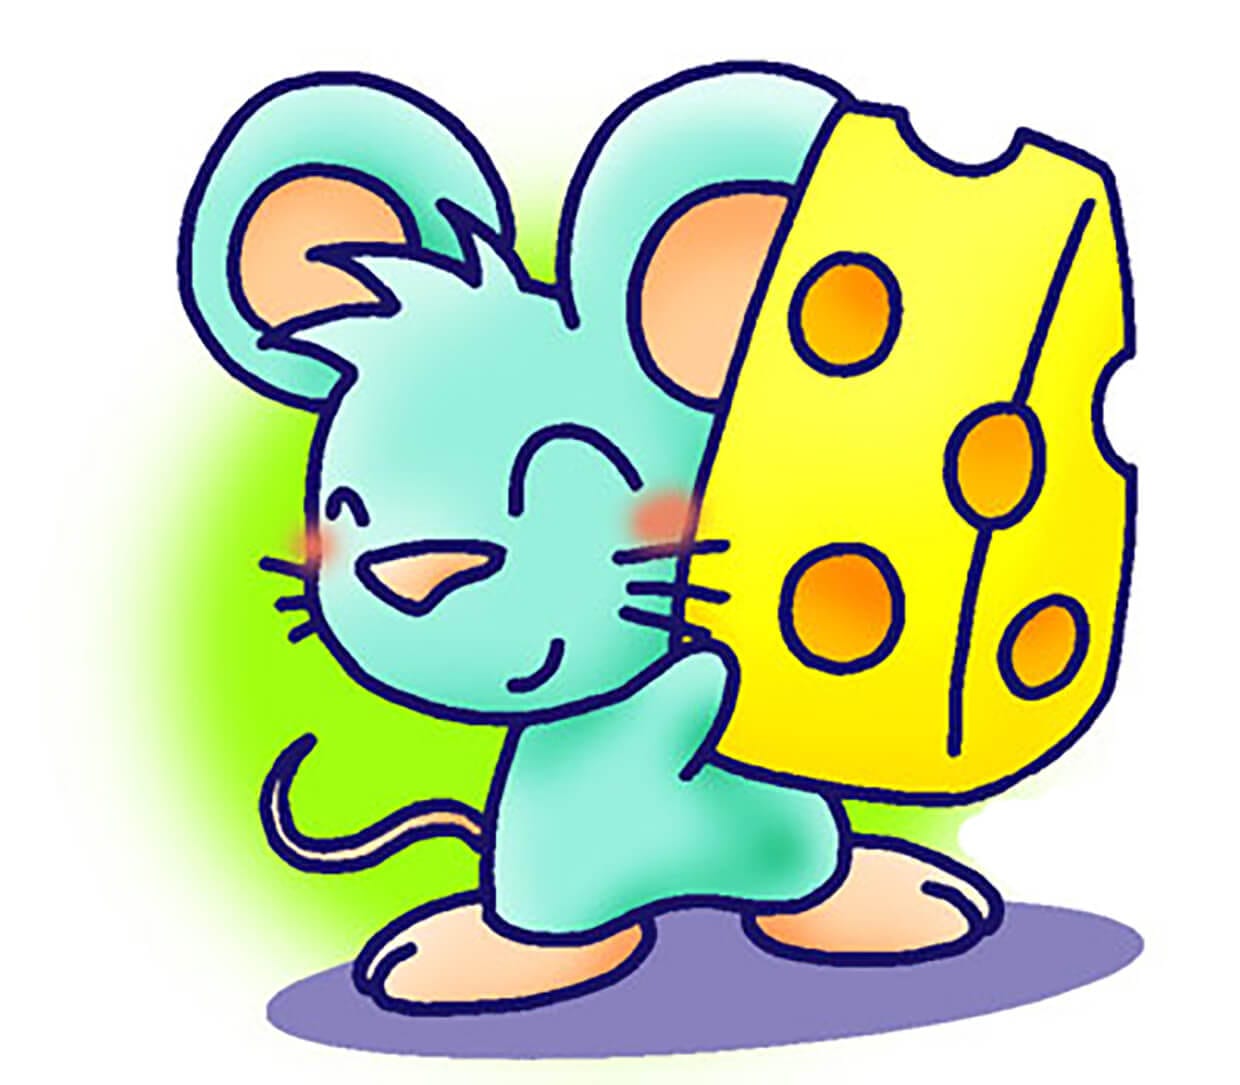 Мышка для детей